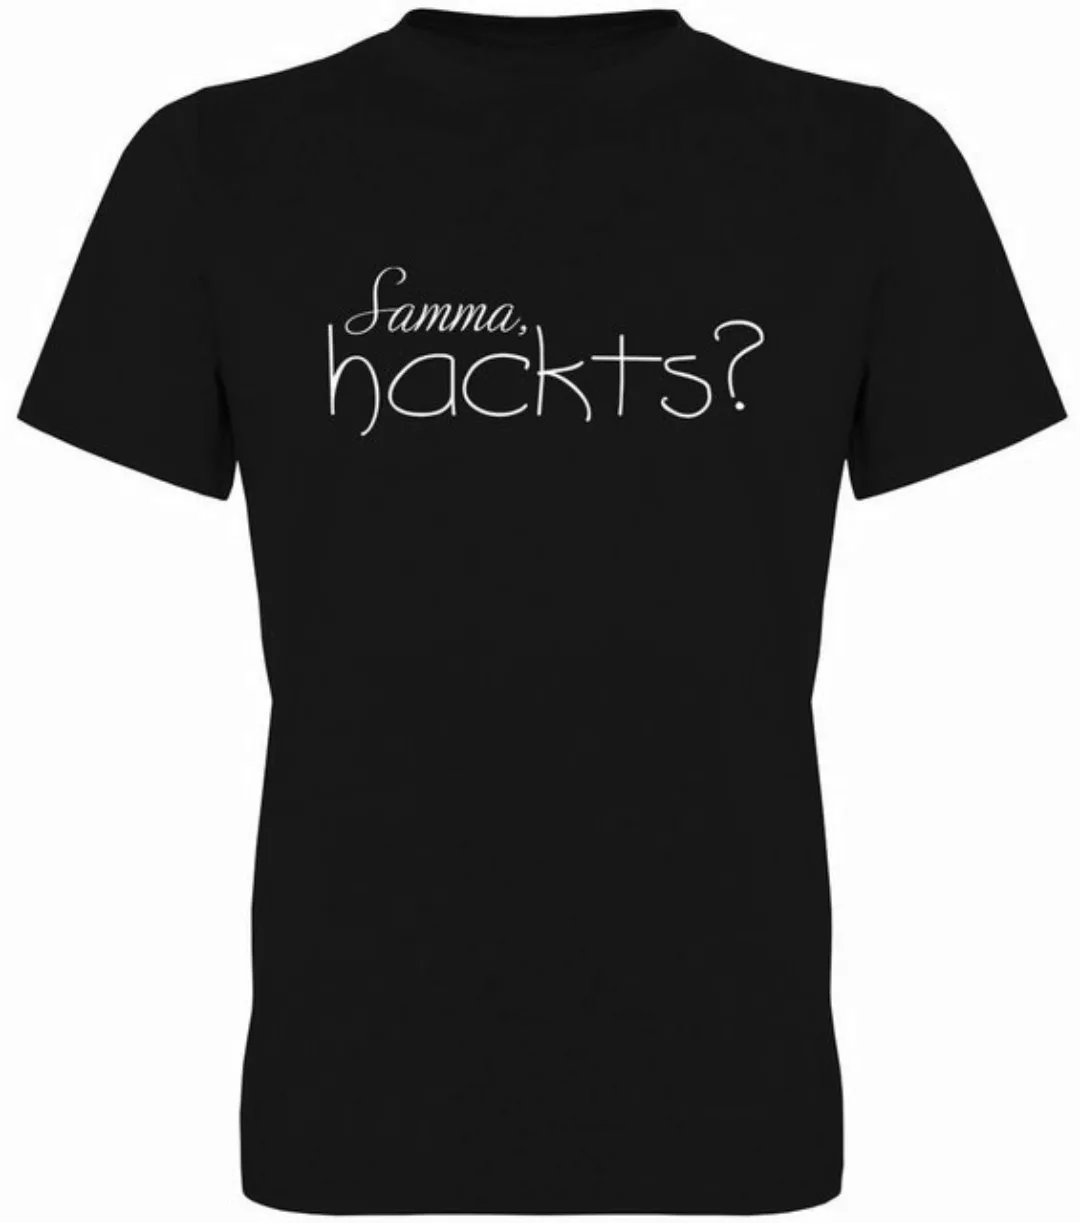 G-graphics T-Shirt Samma, hackts? Herren T-Shirt, mit trendigem Frontprint, günstig online kaufen